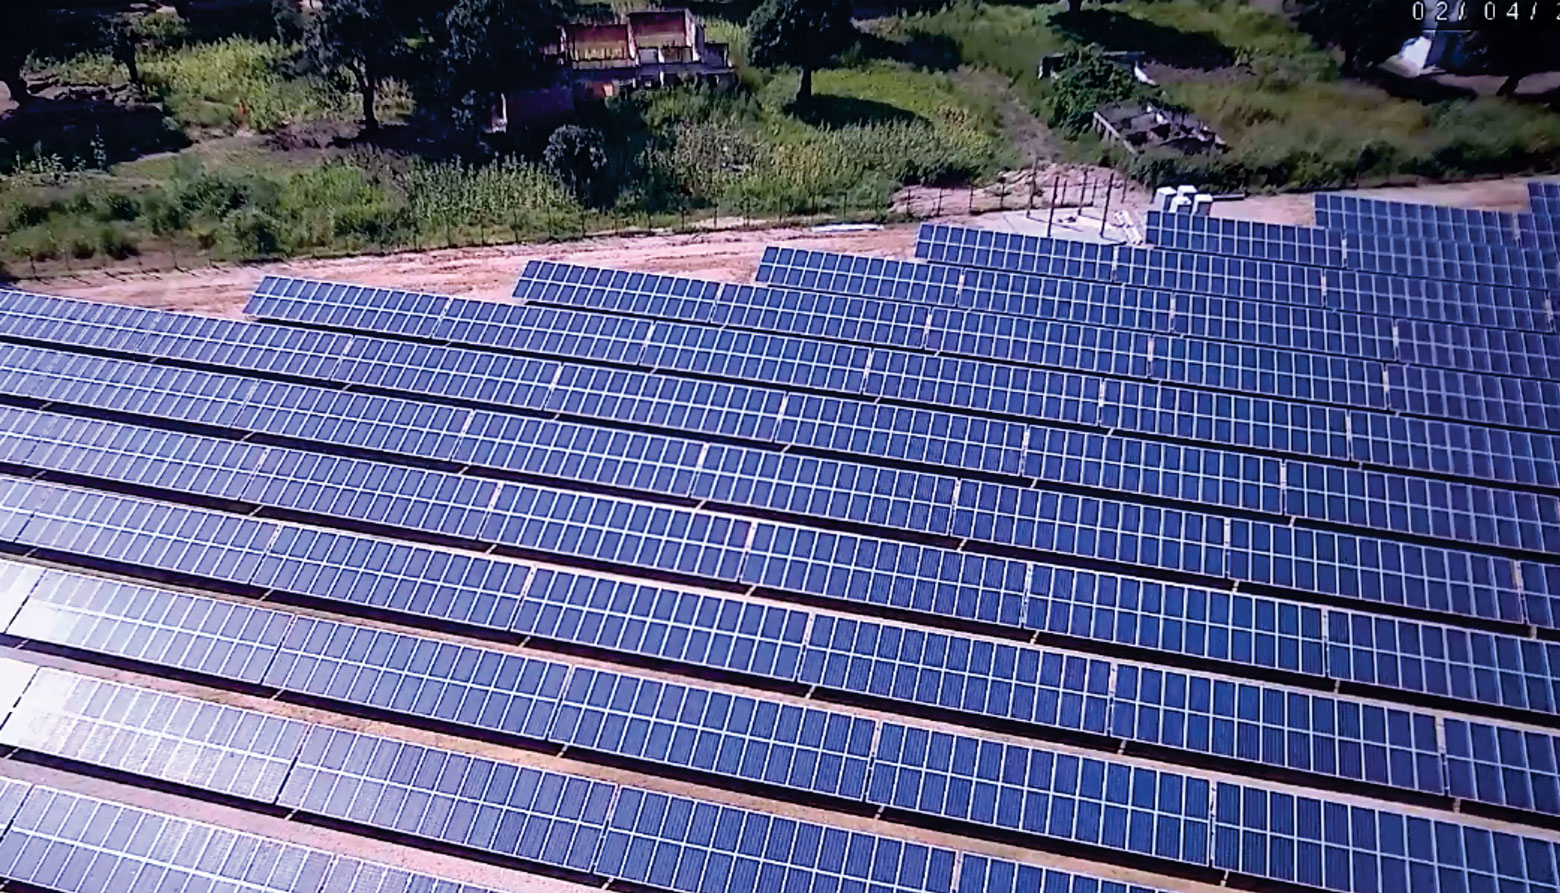 Manono's solar power plant was build by Congo Energy